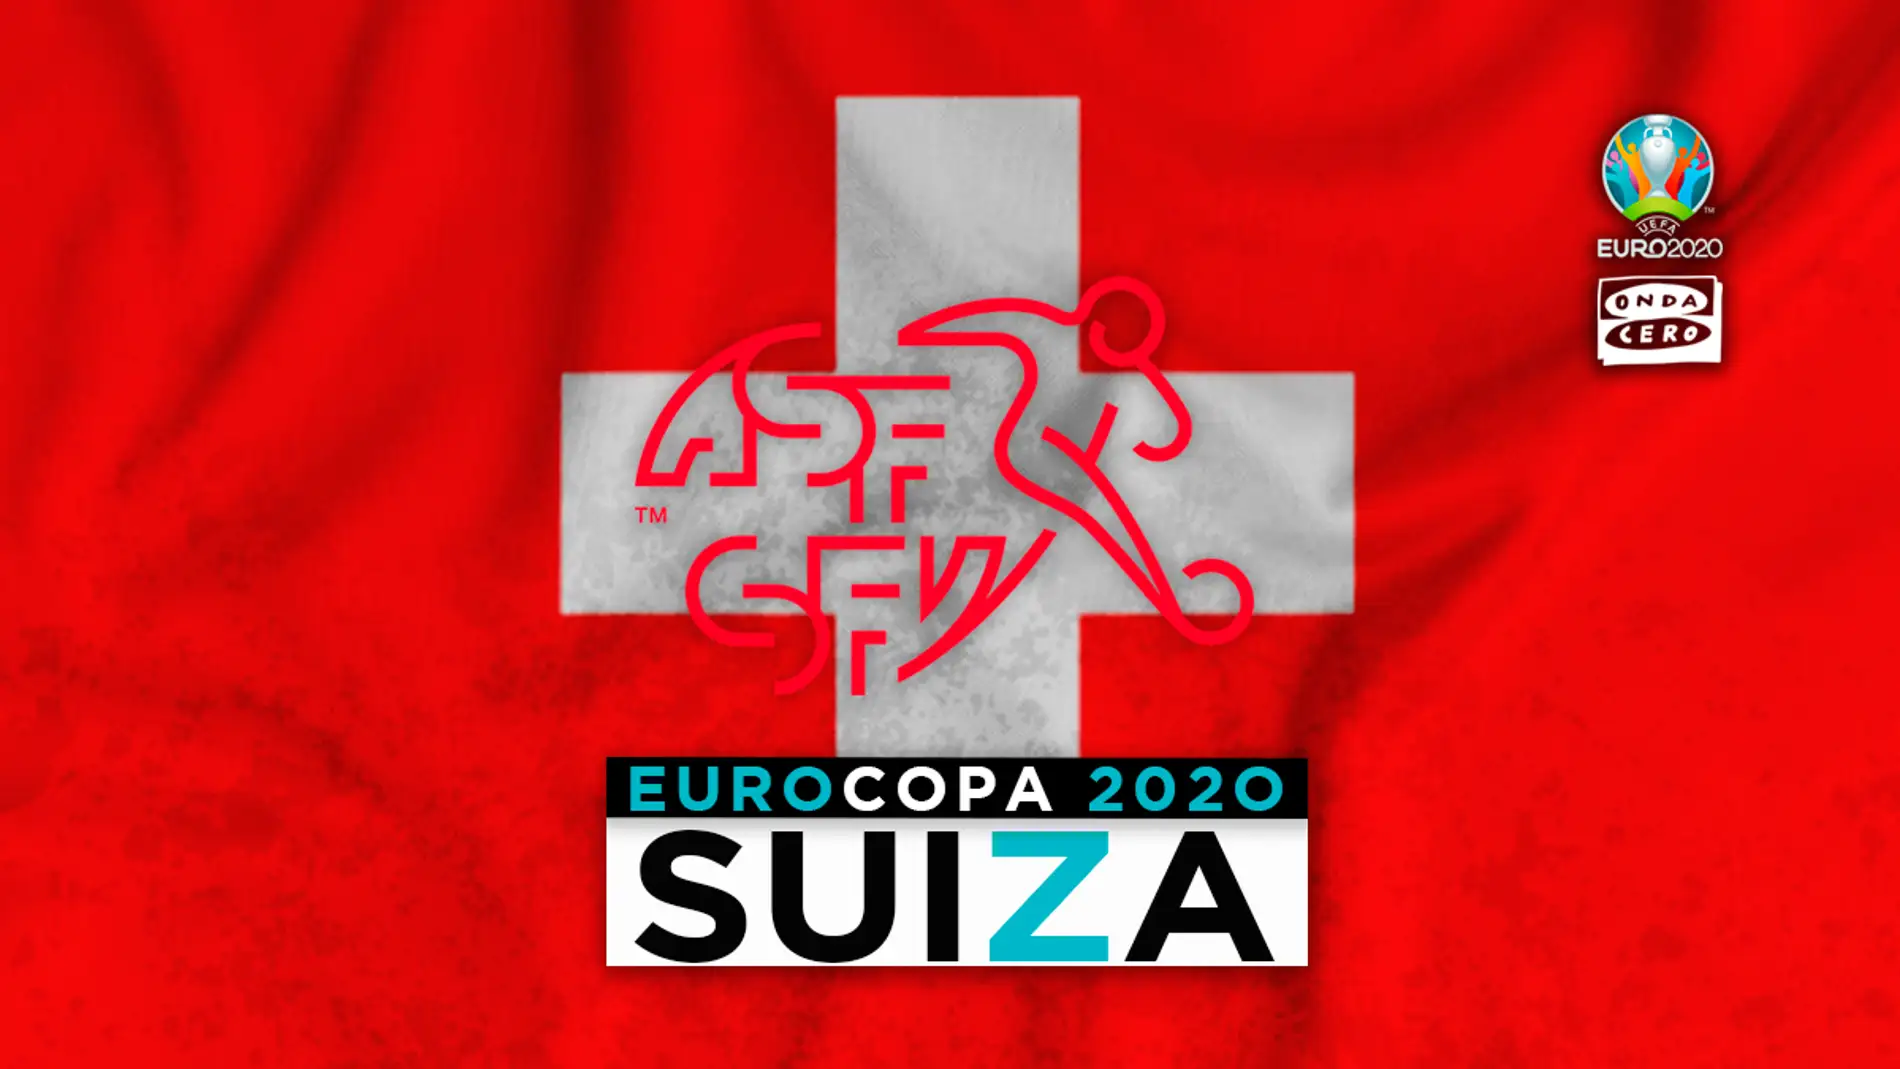 Suiza en la Eurocopa: alineación probable, convocatoria y lista completa de jugadores